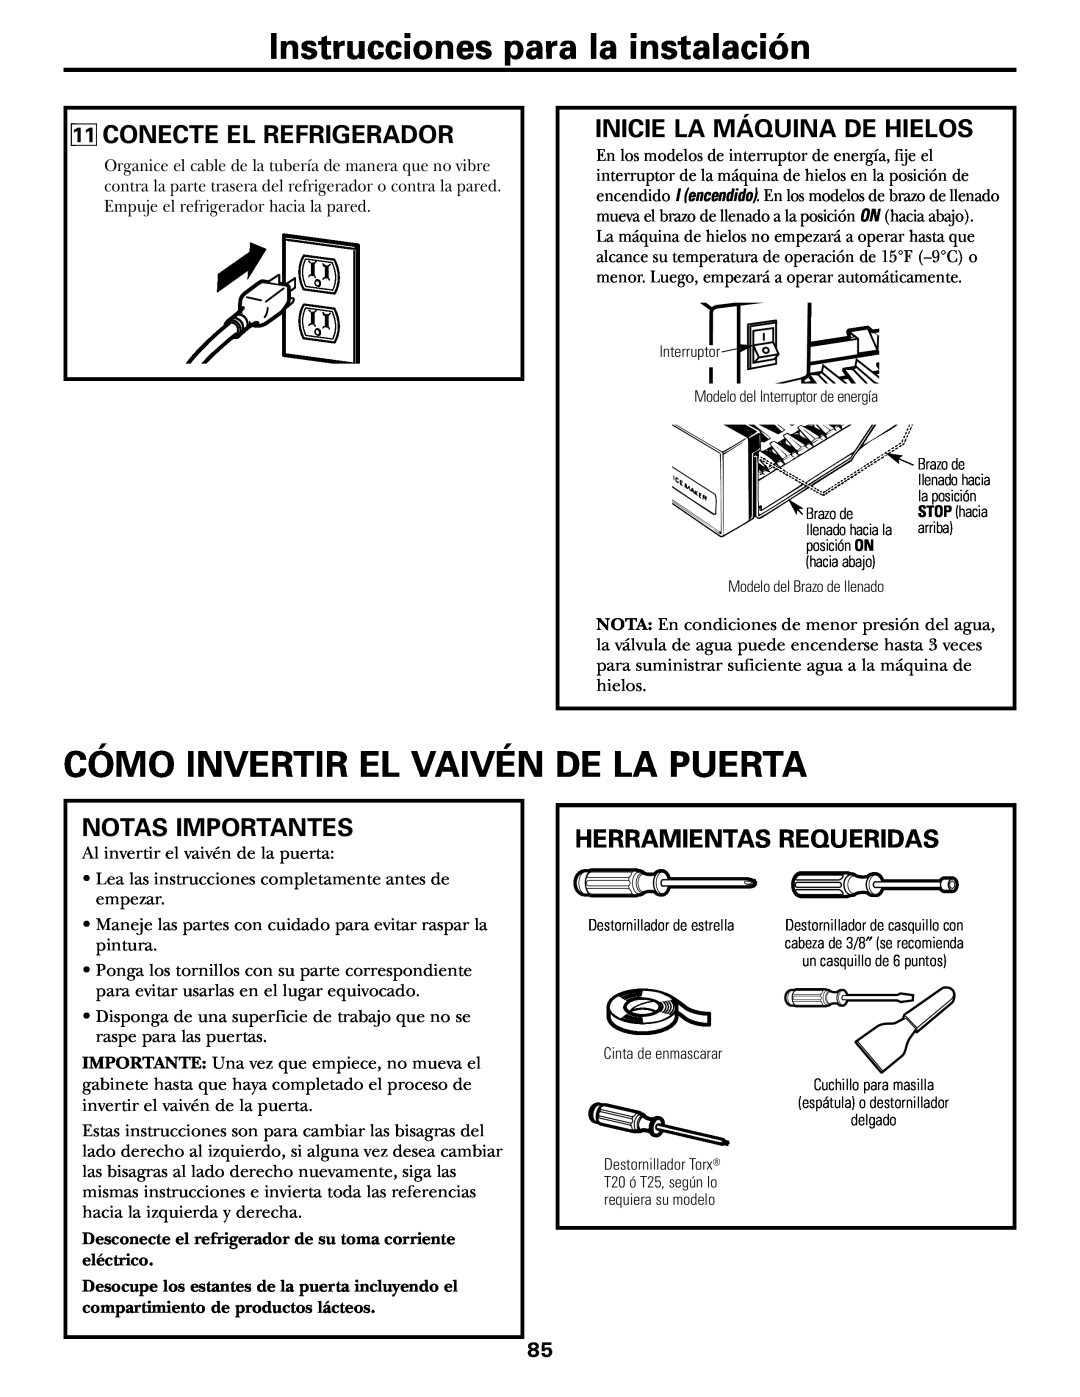 GE 18, 19 Cómo Invertir El Vaivén De La Puerta, Conecte El Refrigerador, Inicie La Máquina De Hielos, Notas Importantes 